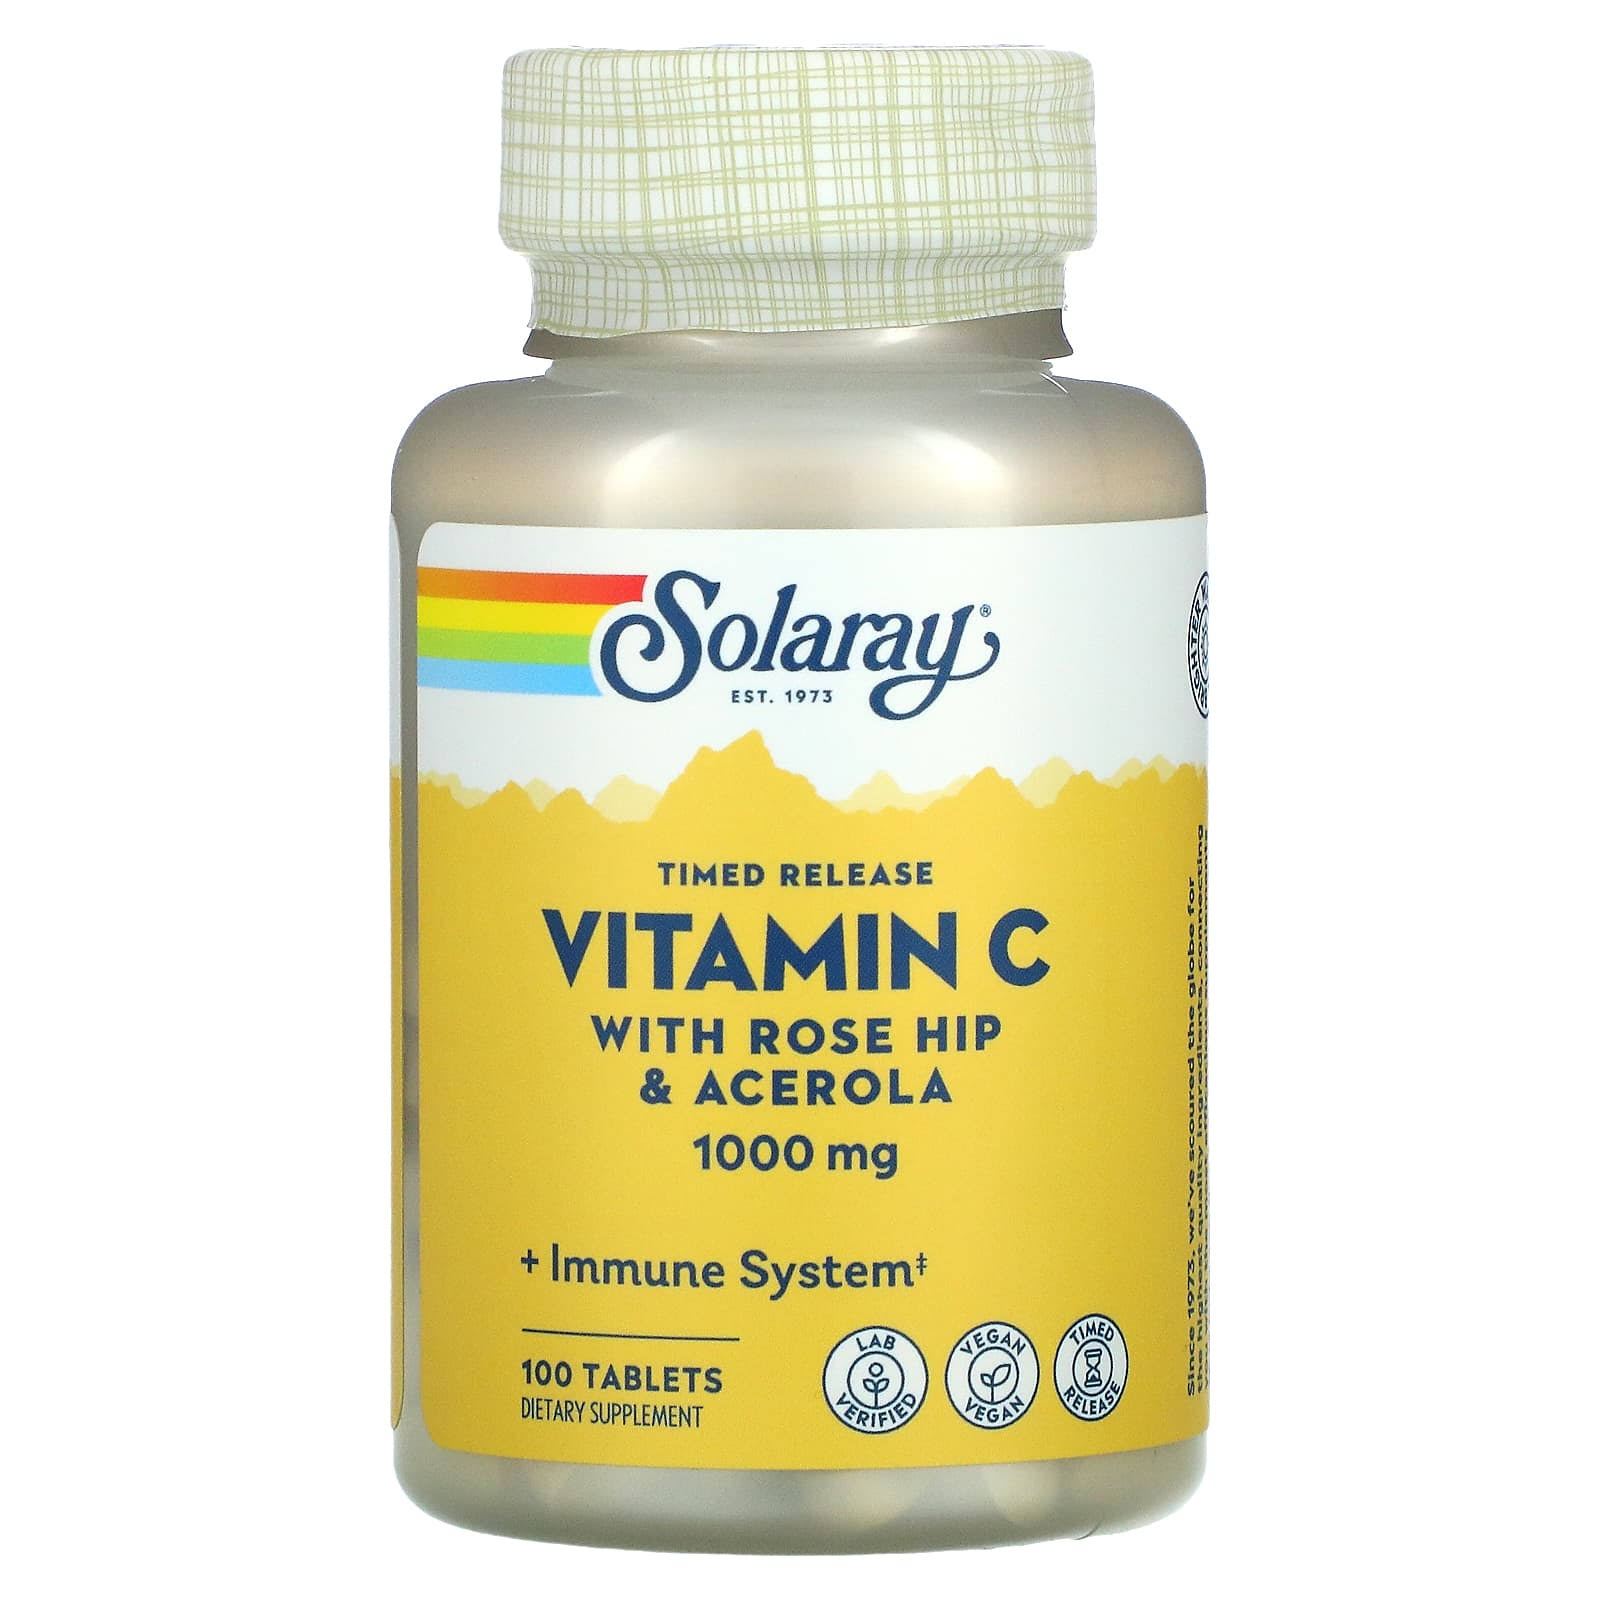 Solaray Vitamin C - 1000mg x 100 tablets